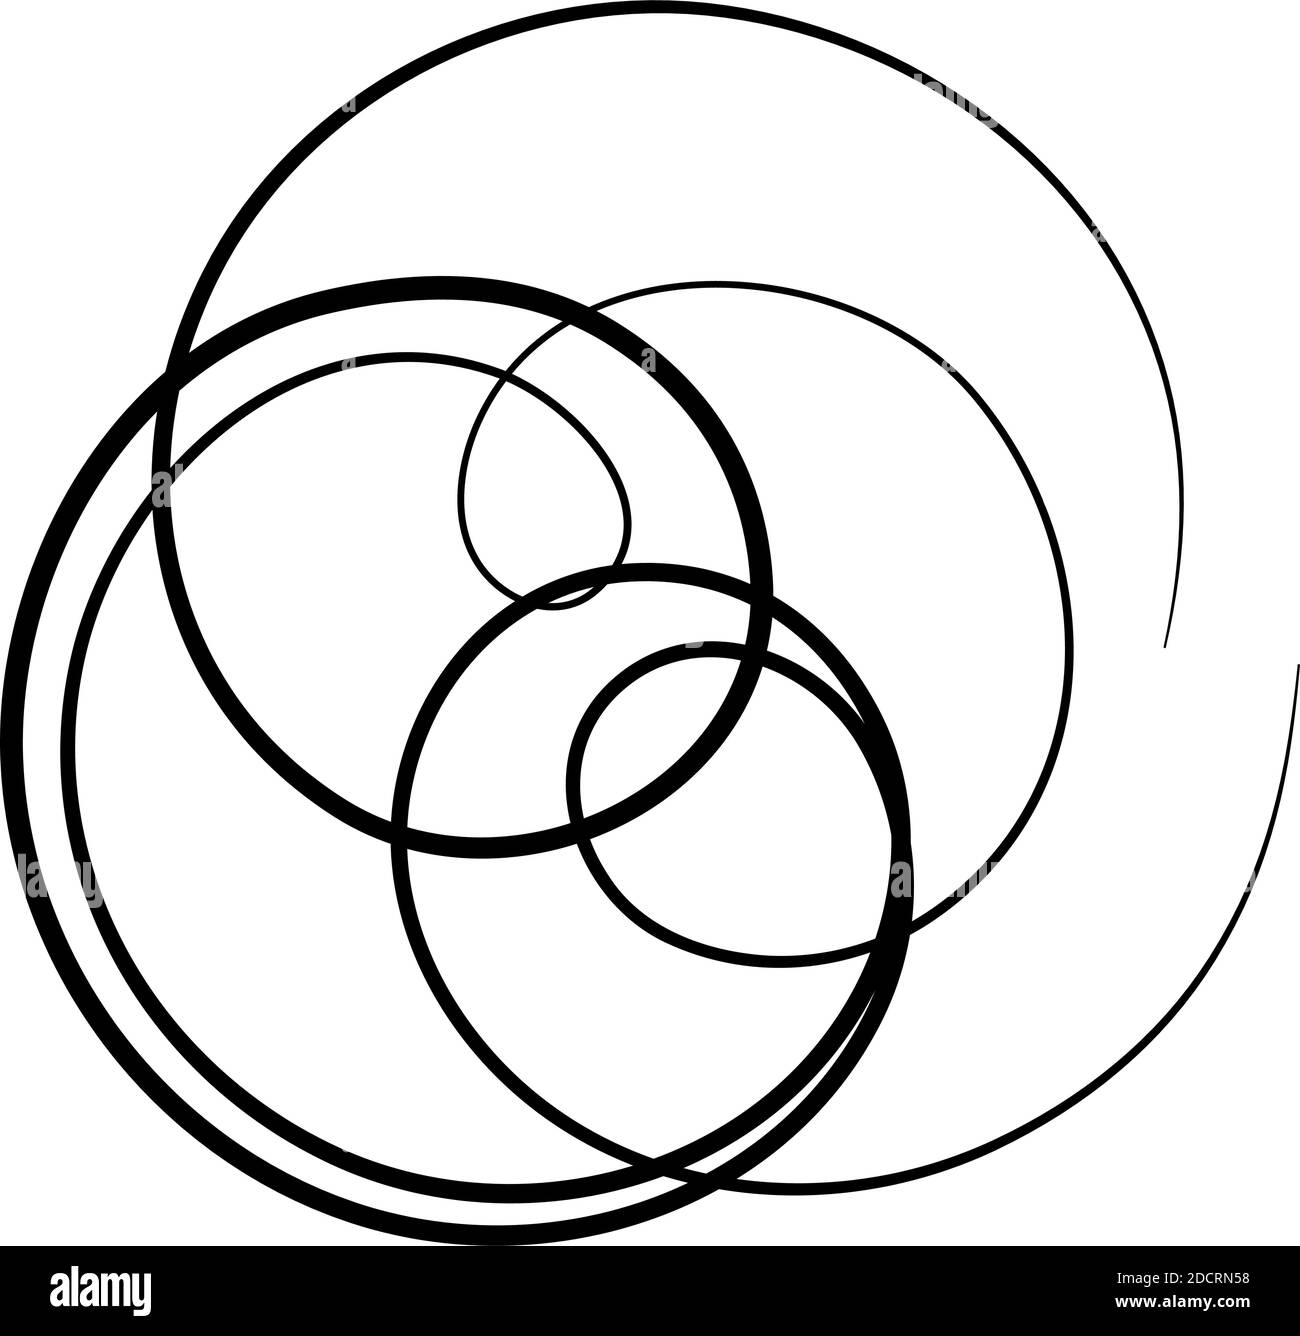 Curlicue, Loop shapes, elements vector illustration — Stock vector illustration, clip-art Stock Vector